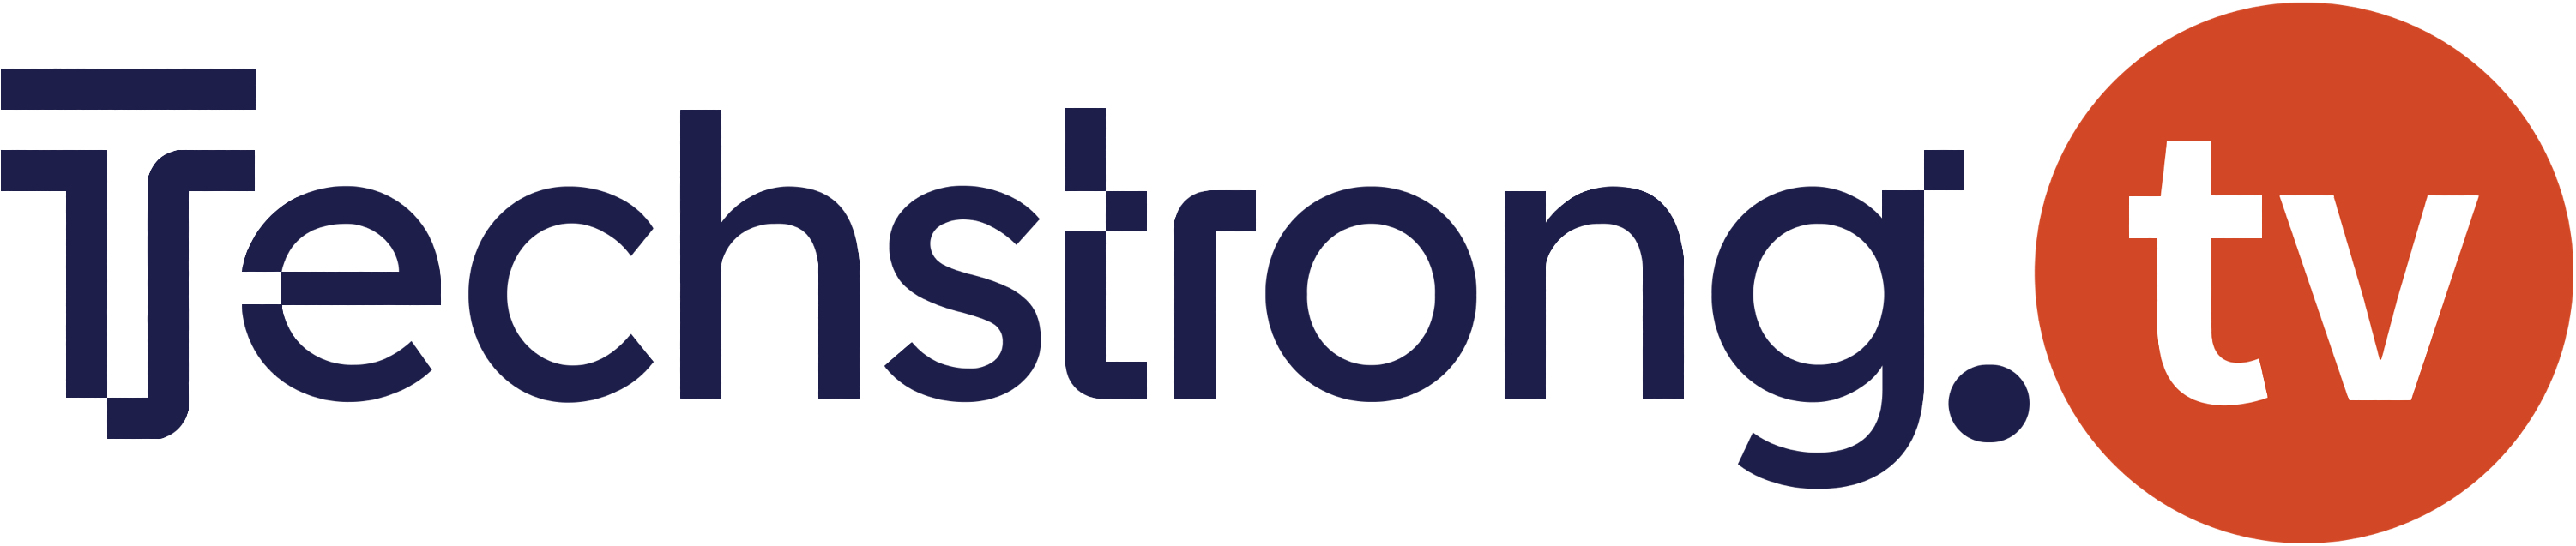 Techstrong Tv logo